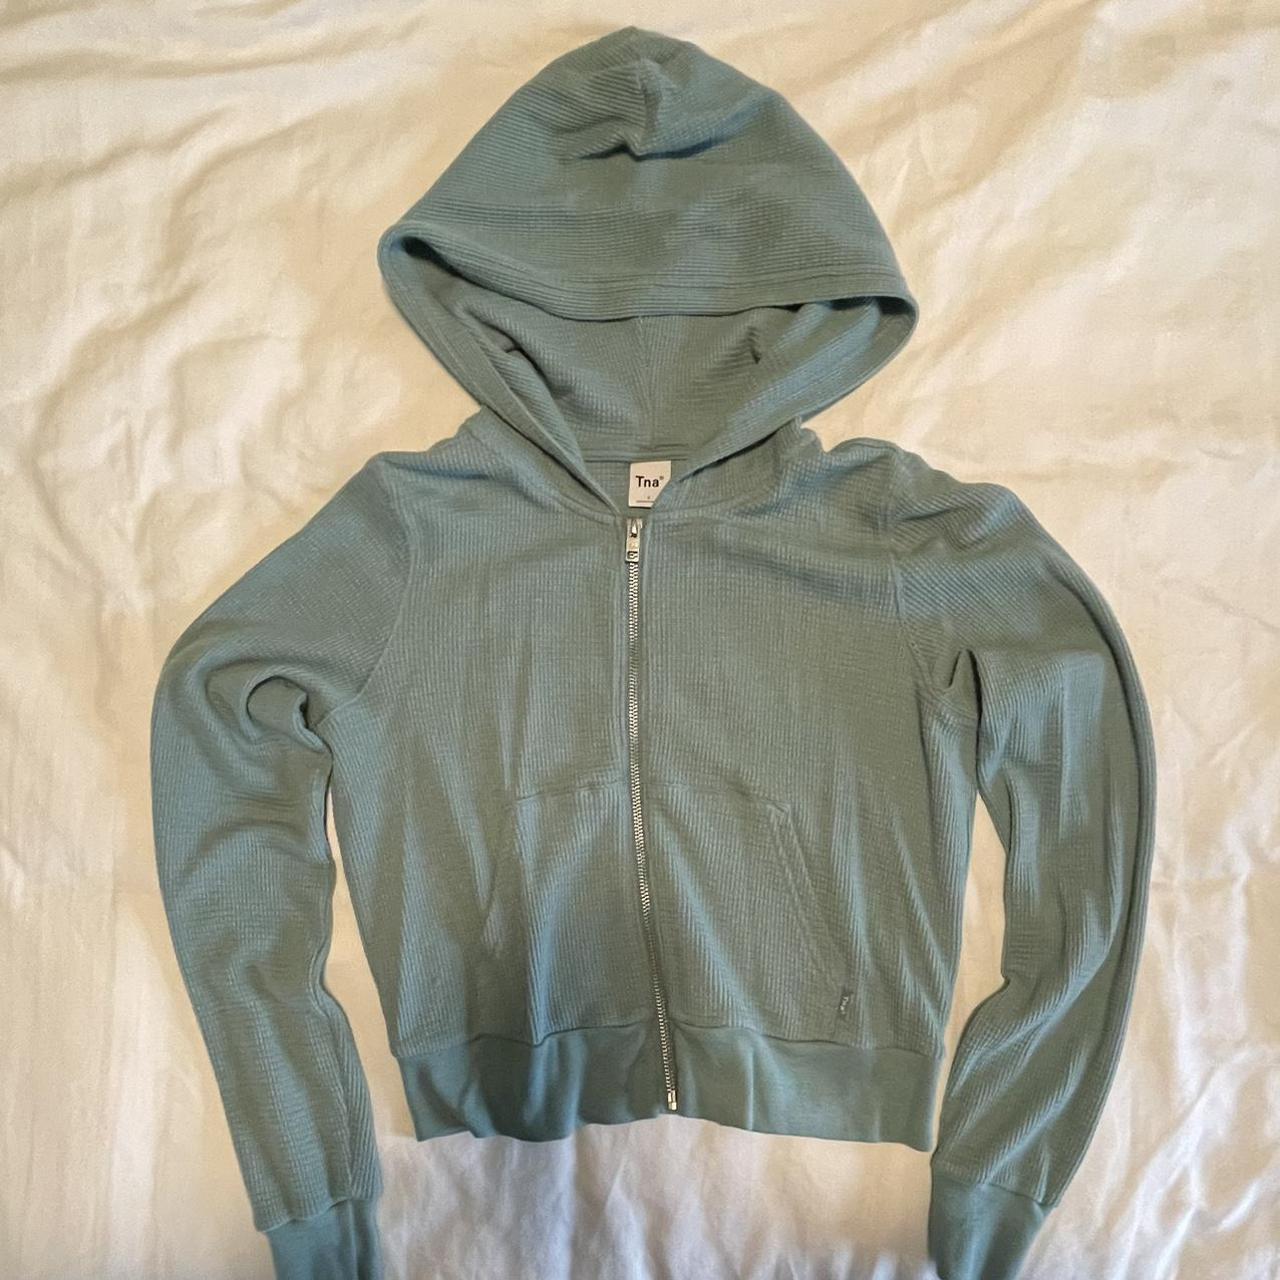 Aritzia Tna thermal zip hoodie in Yuca Green... - Depop